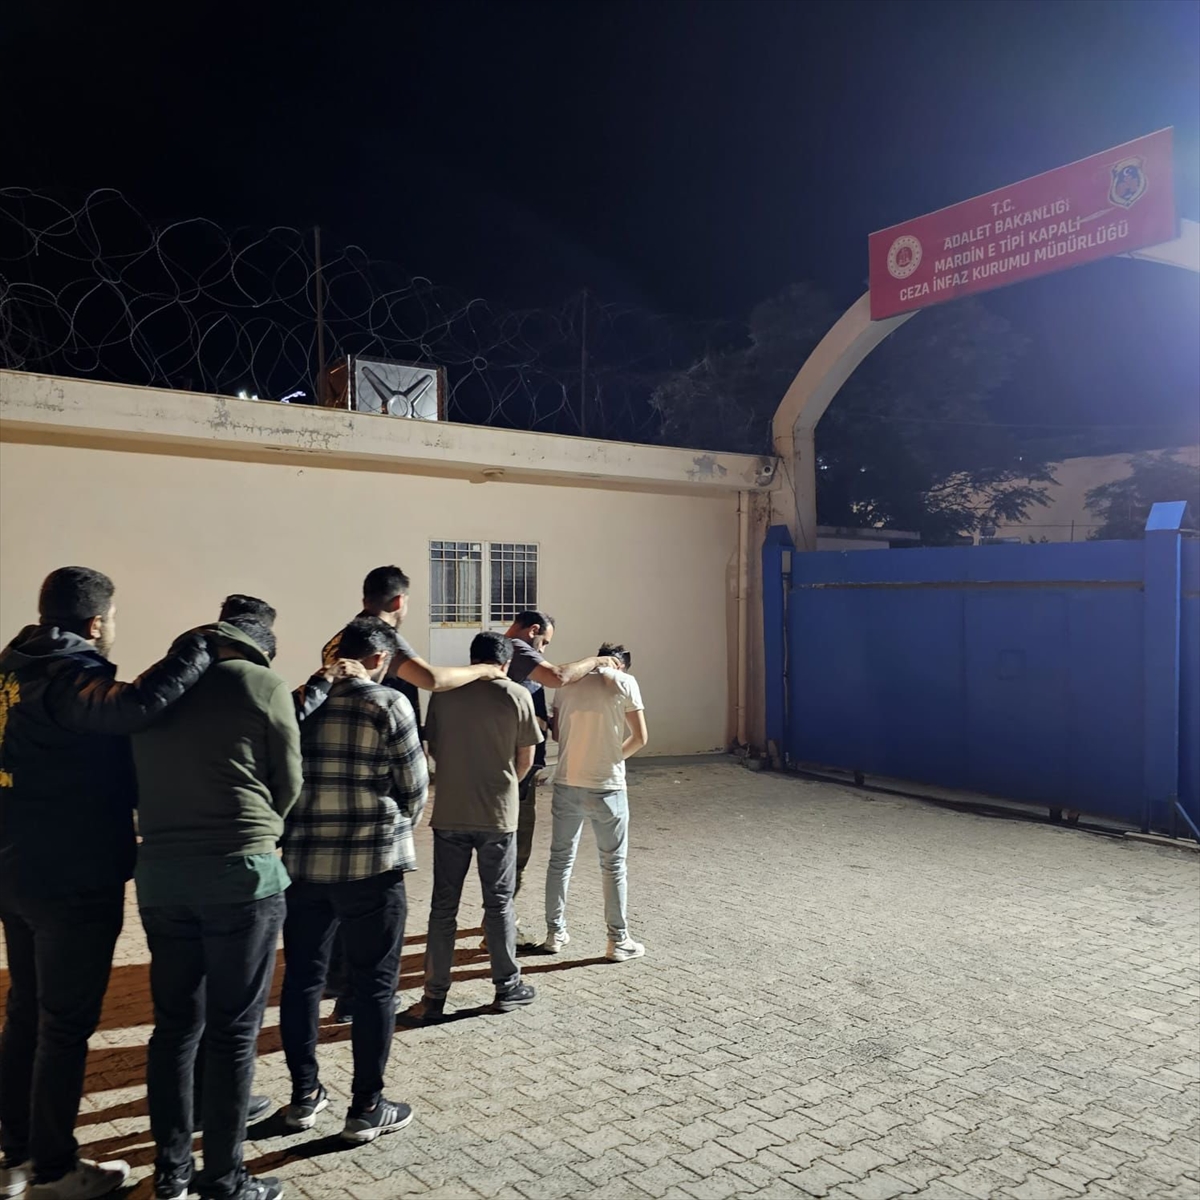 Mardin'de 3 kişinin yaralandığı silahlı kavgaya ilişkin 4 şüpheli tutuklandı